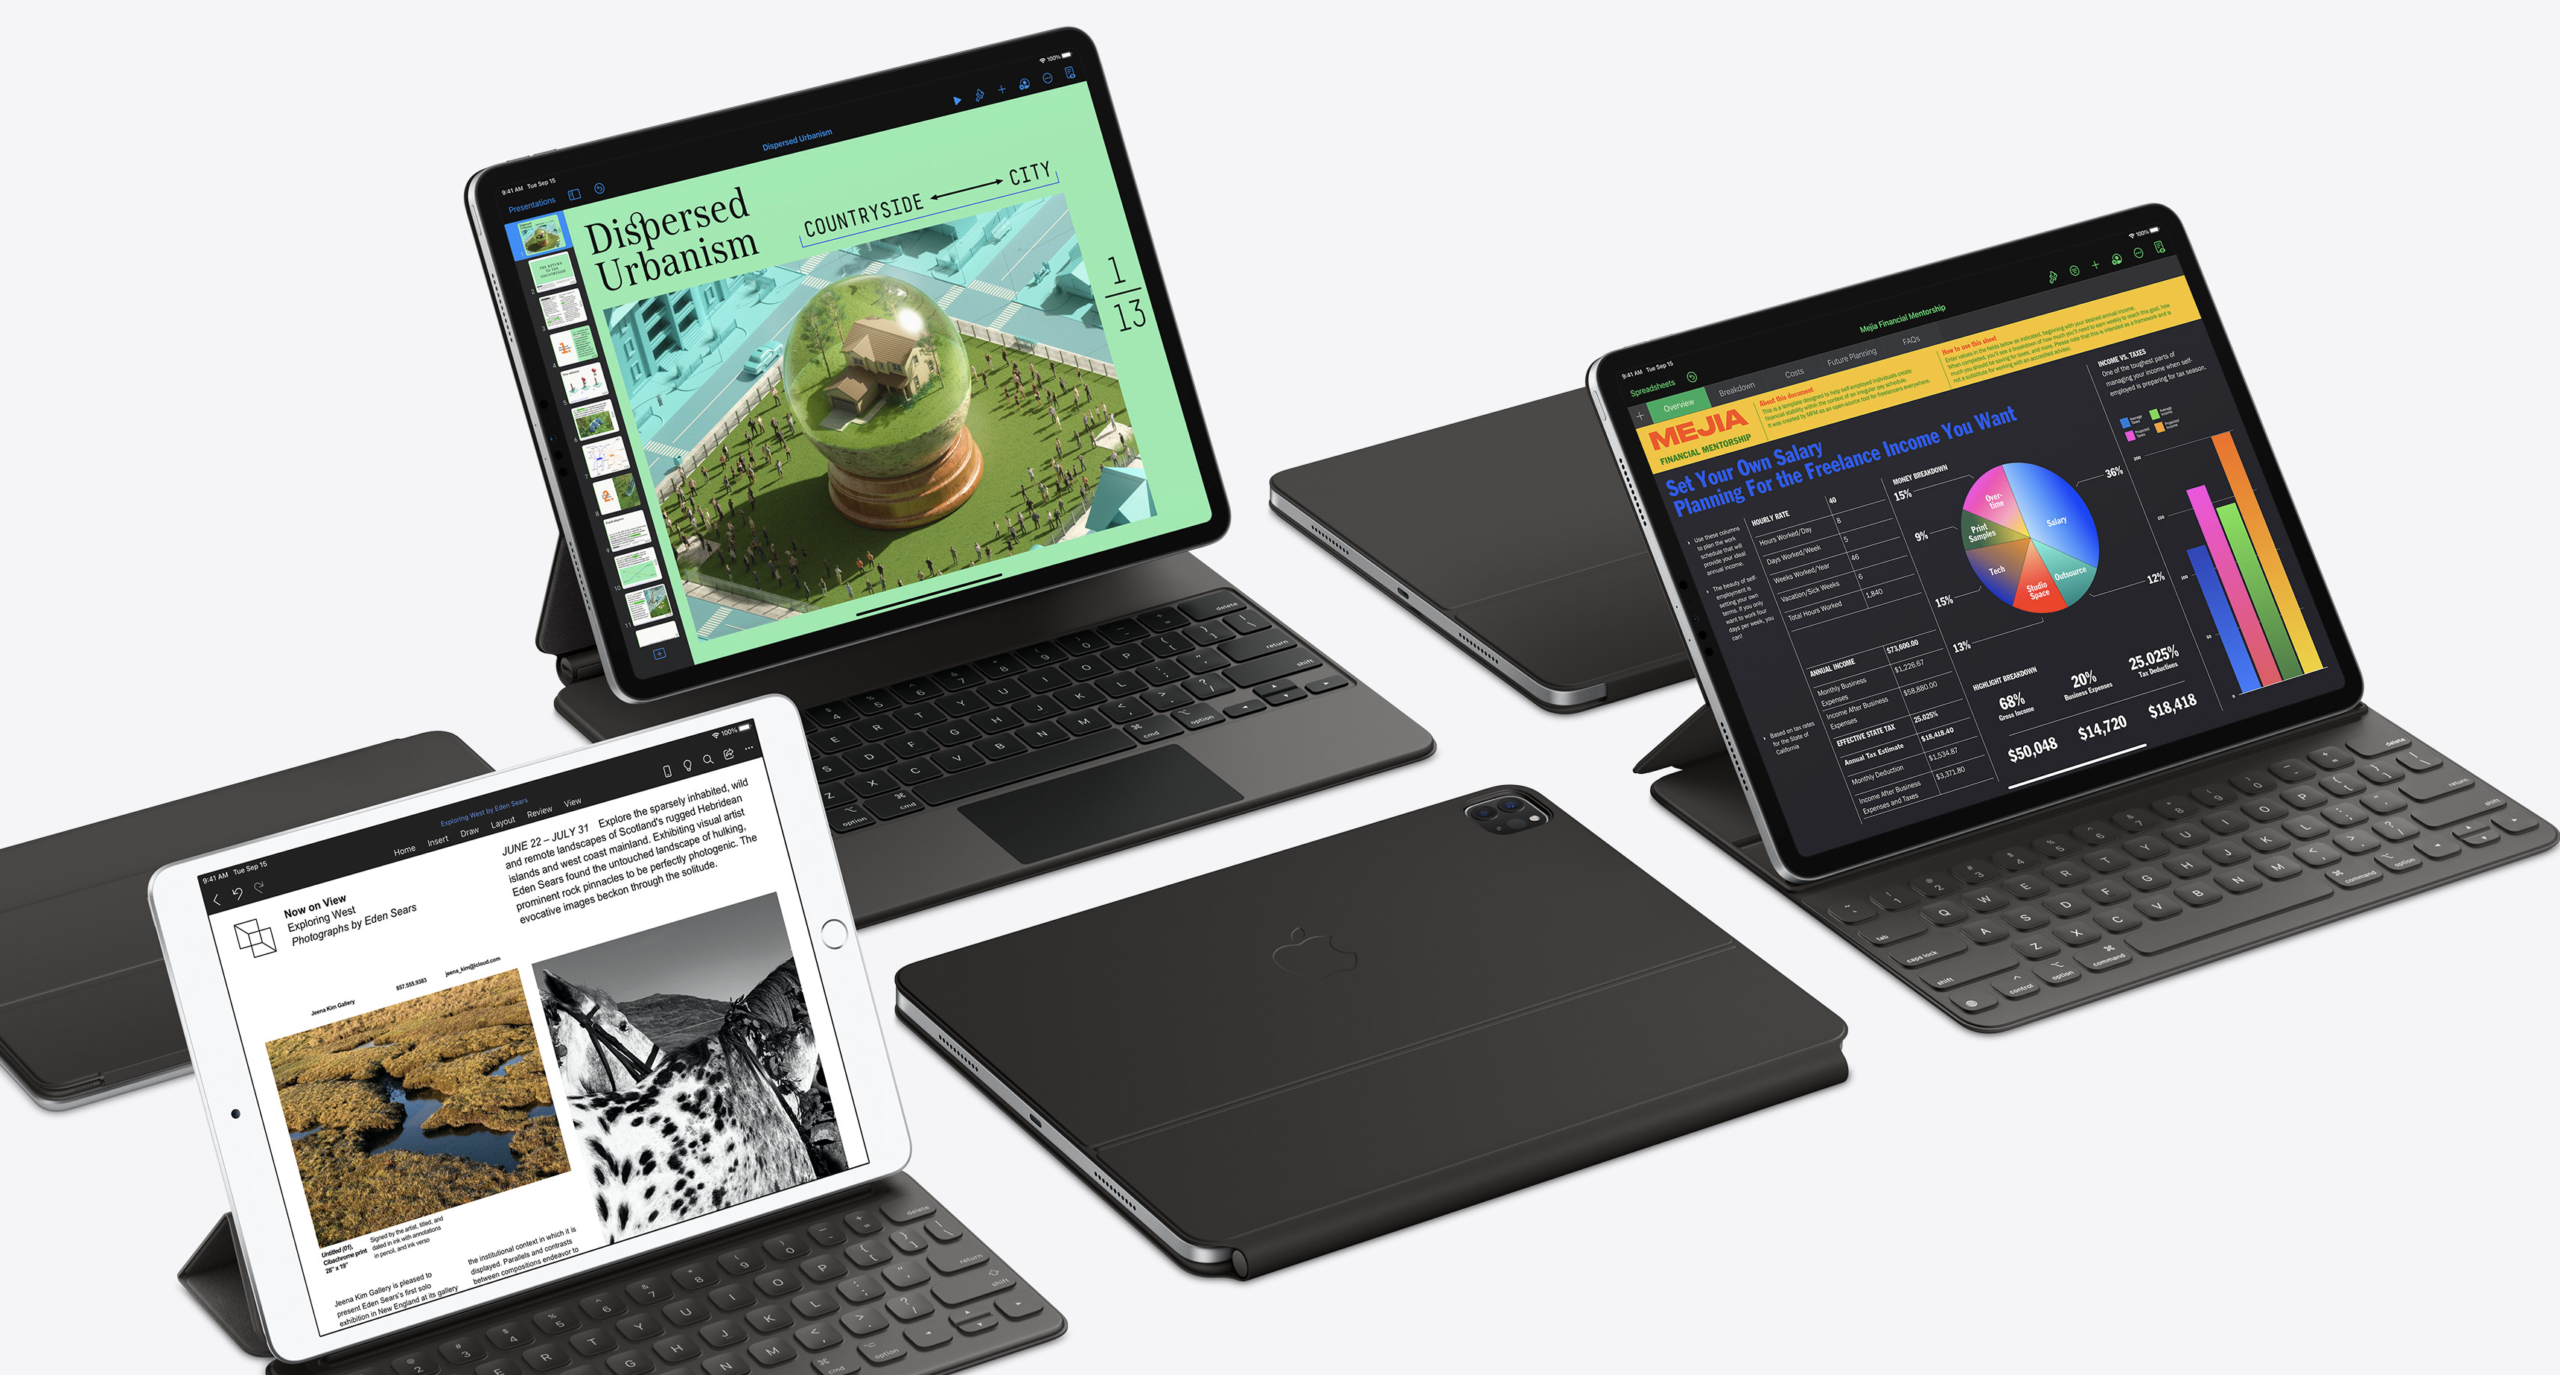 2021年新型iPad ProとiPad Air4を比較！イラスト・ゲーム・編集…どちらを買うべき？ | iPhone格安SIM通信